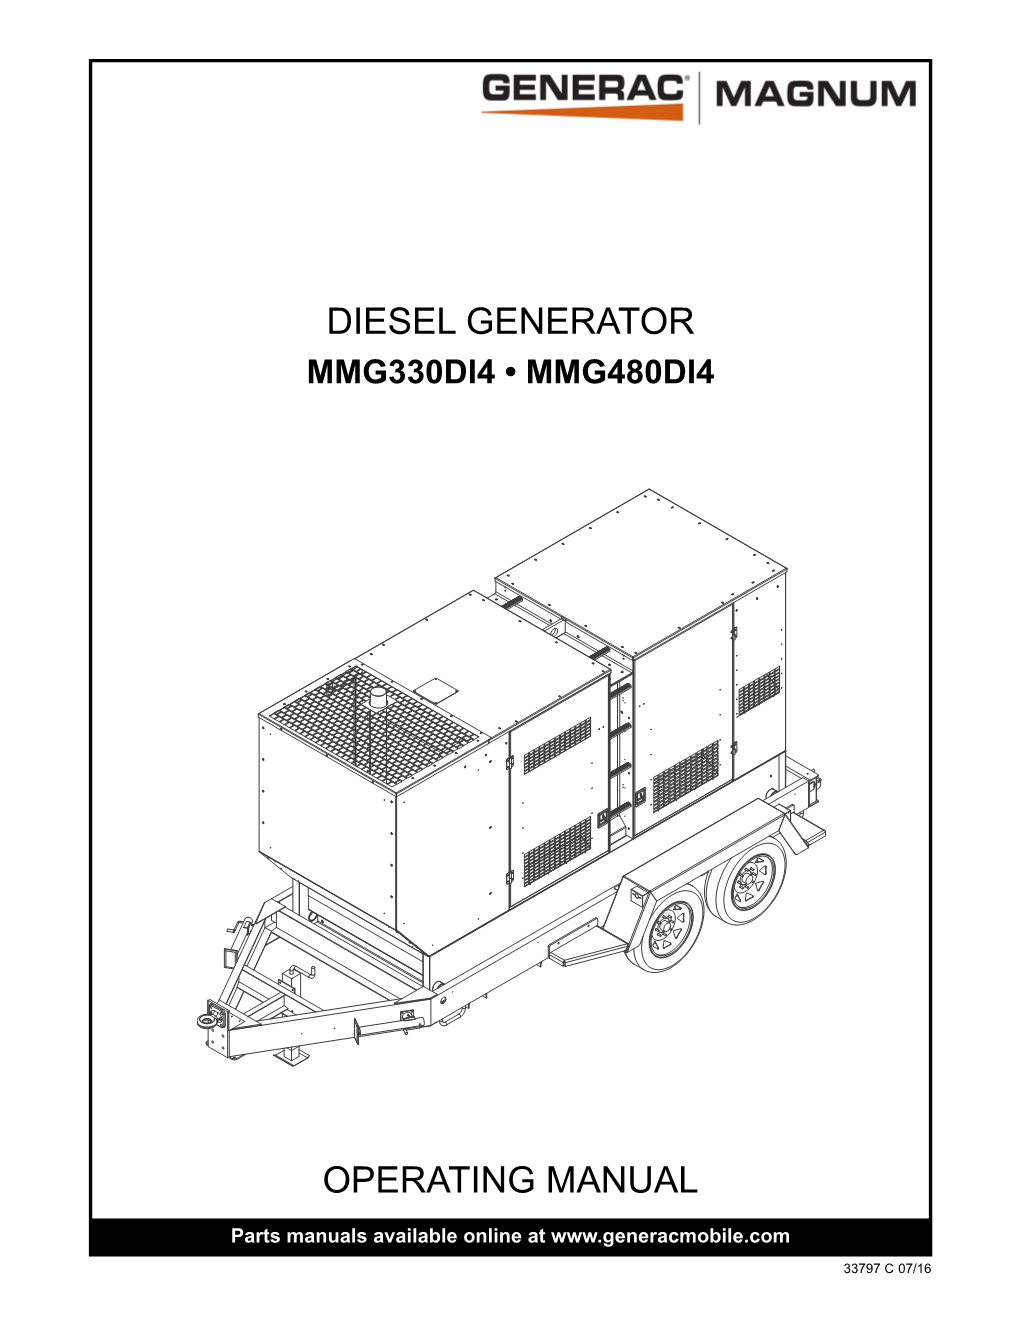 Operating Manual Diesel Generator